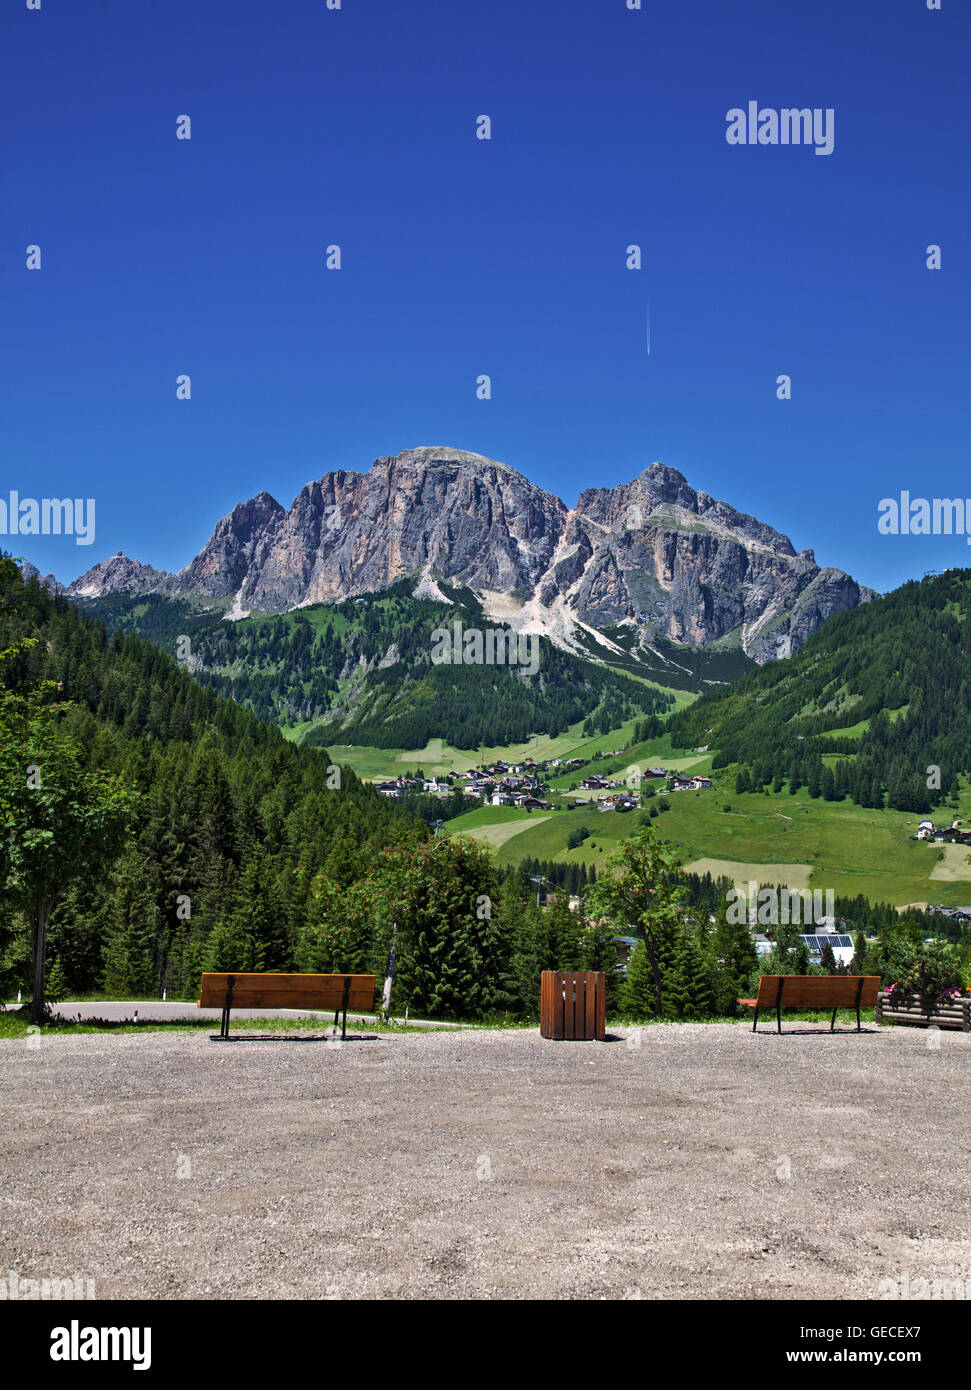 View towards Colfosco (Colfosch) from Corvara, Val Badia, Italy Stock Photo